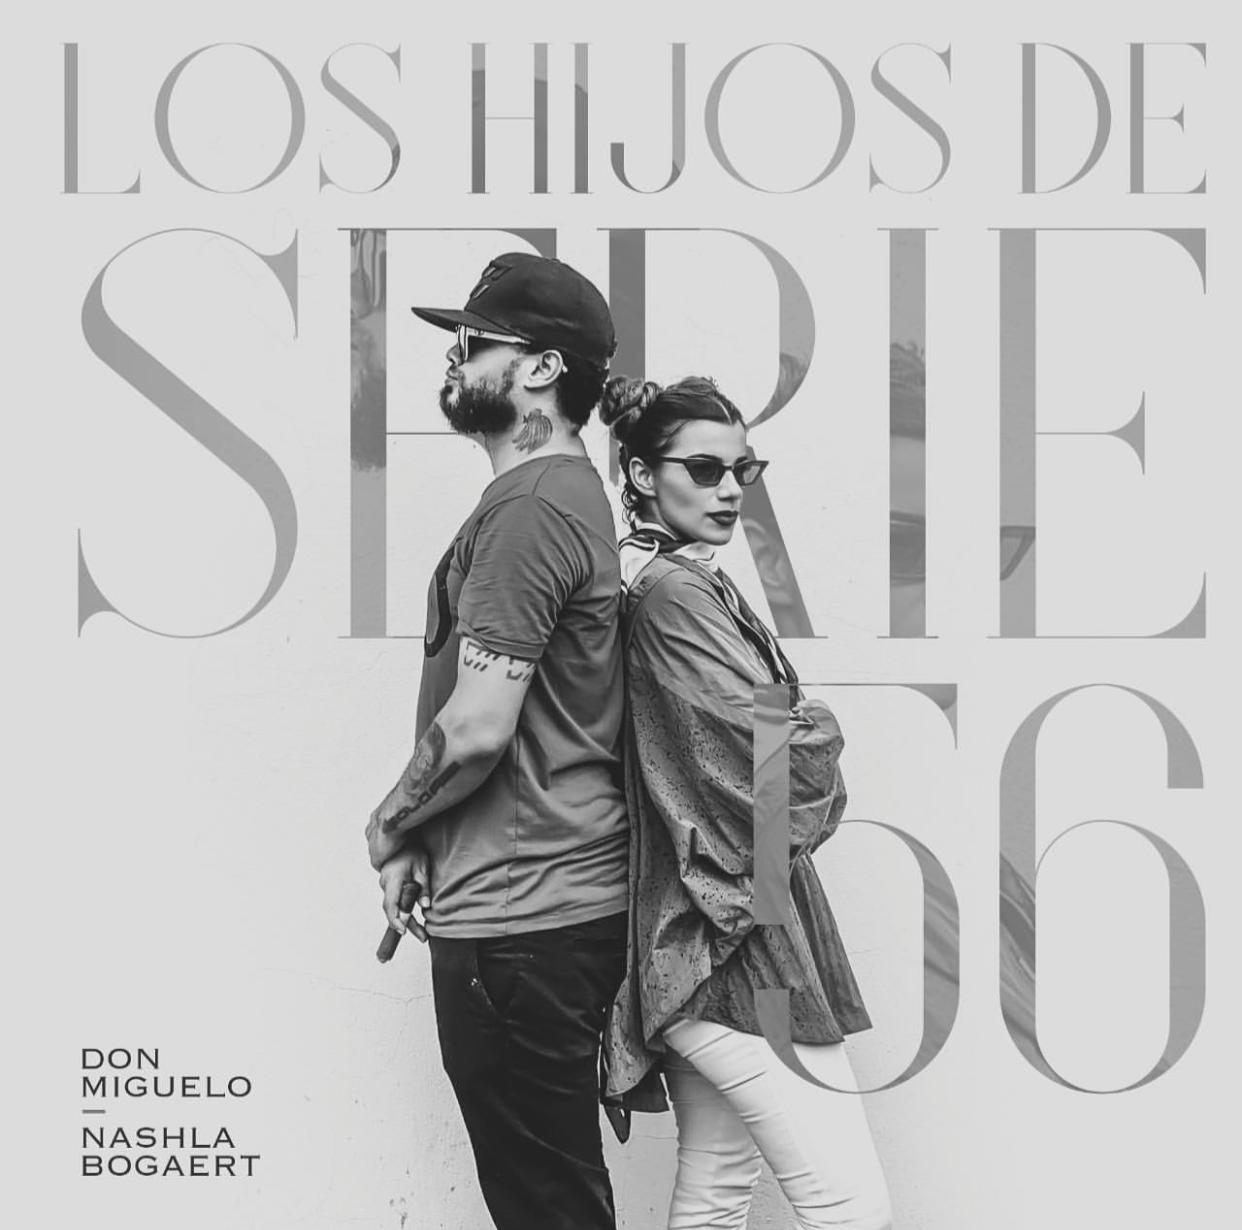 Don Miguelo y Nashla Bogaert tendencia #1 por videoclip "Quien e ete"